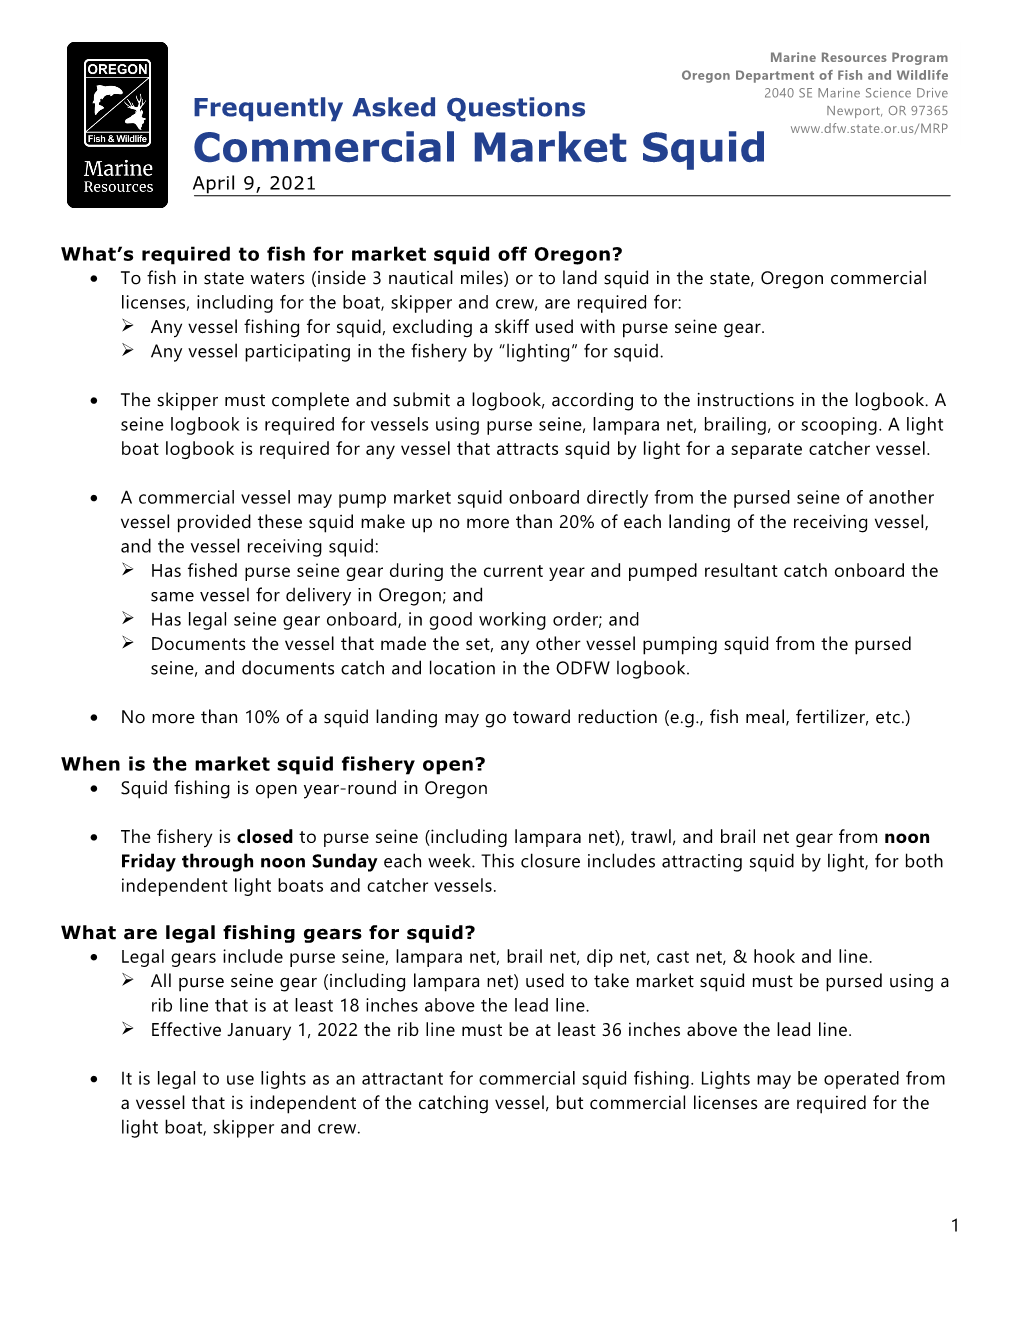 Commercial Market Squid April 9, 2021